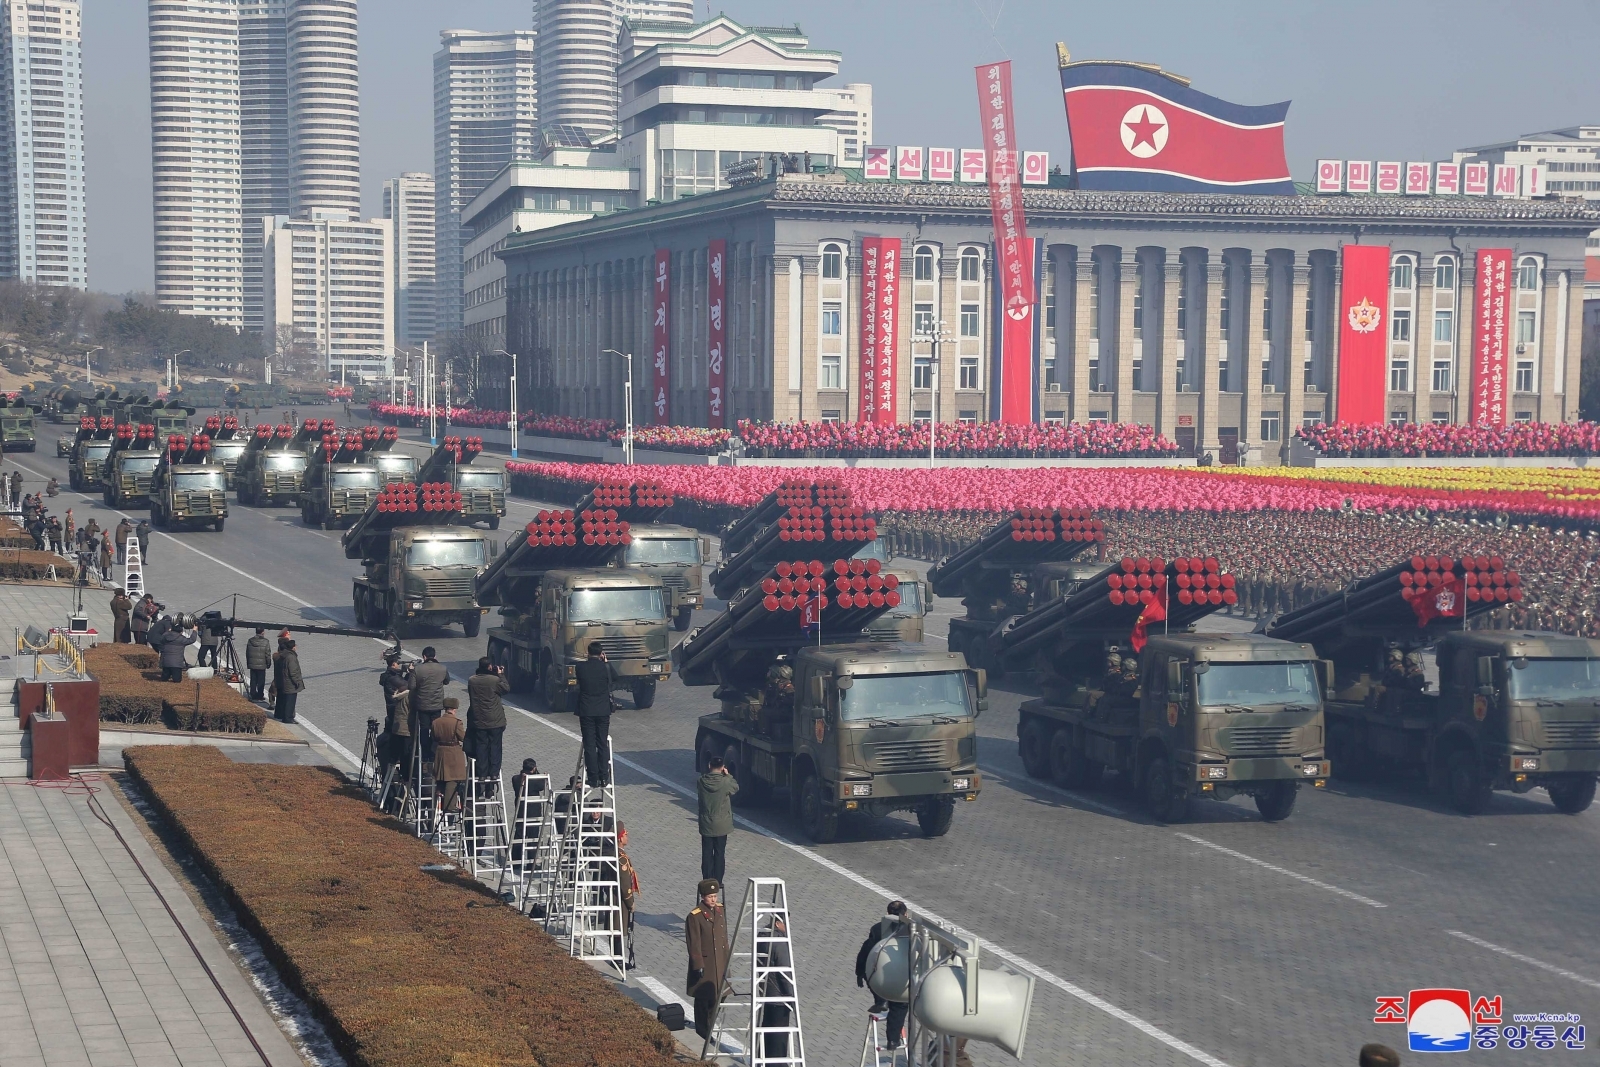 North Korea grand military parade